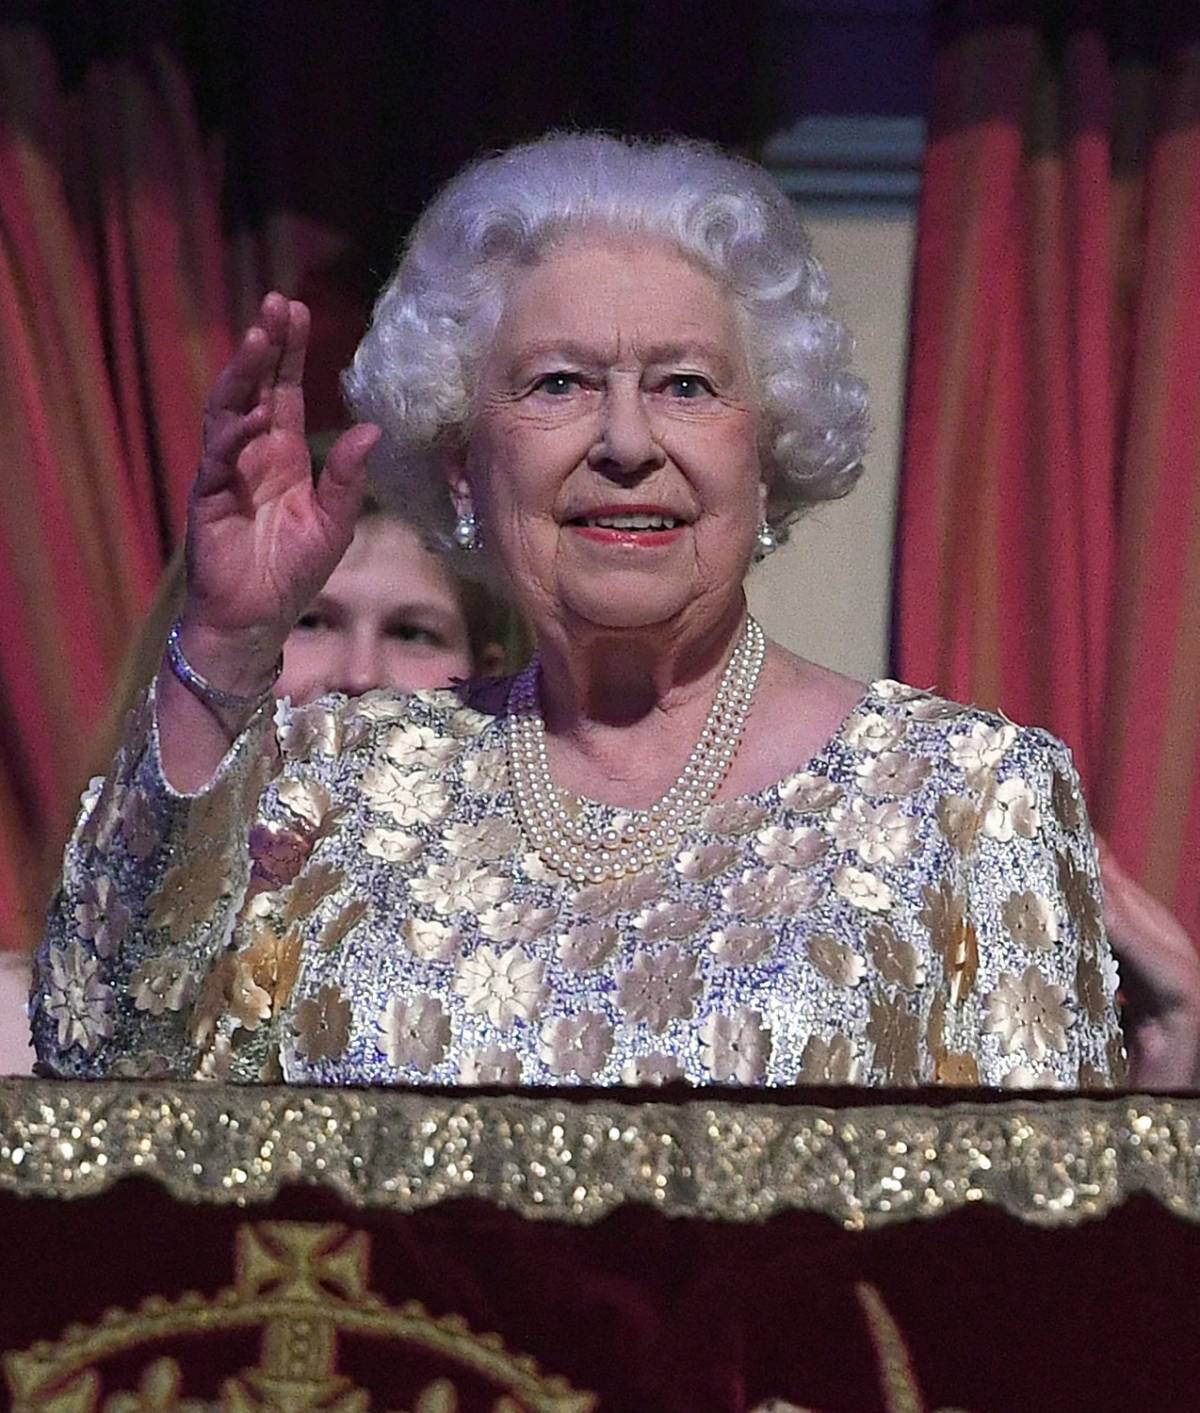 La regina Elisabetta abdicherà entro fine anno?